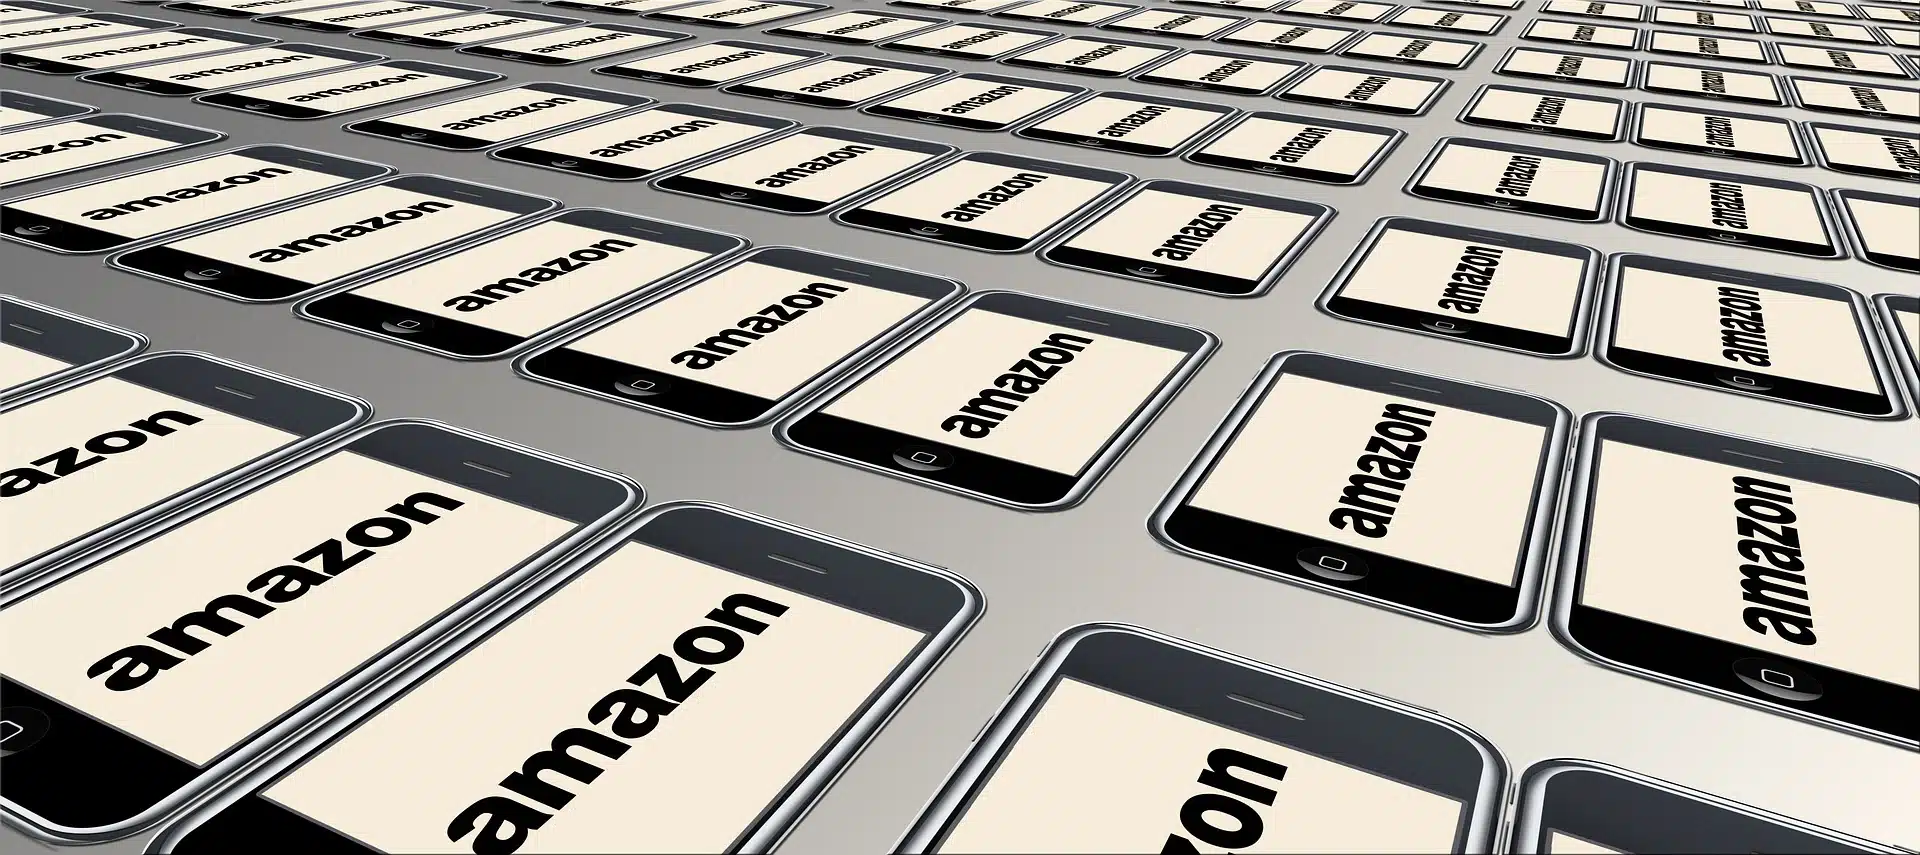 Assunzioni Amazon 2020: 100 assunzioni per nuova sede in Piemonte